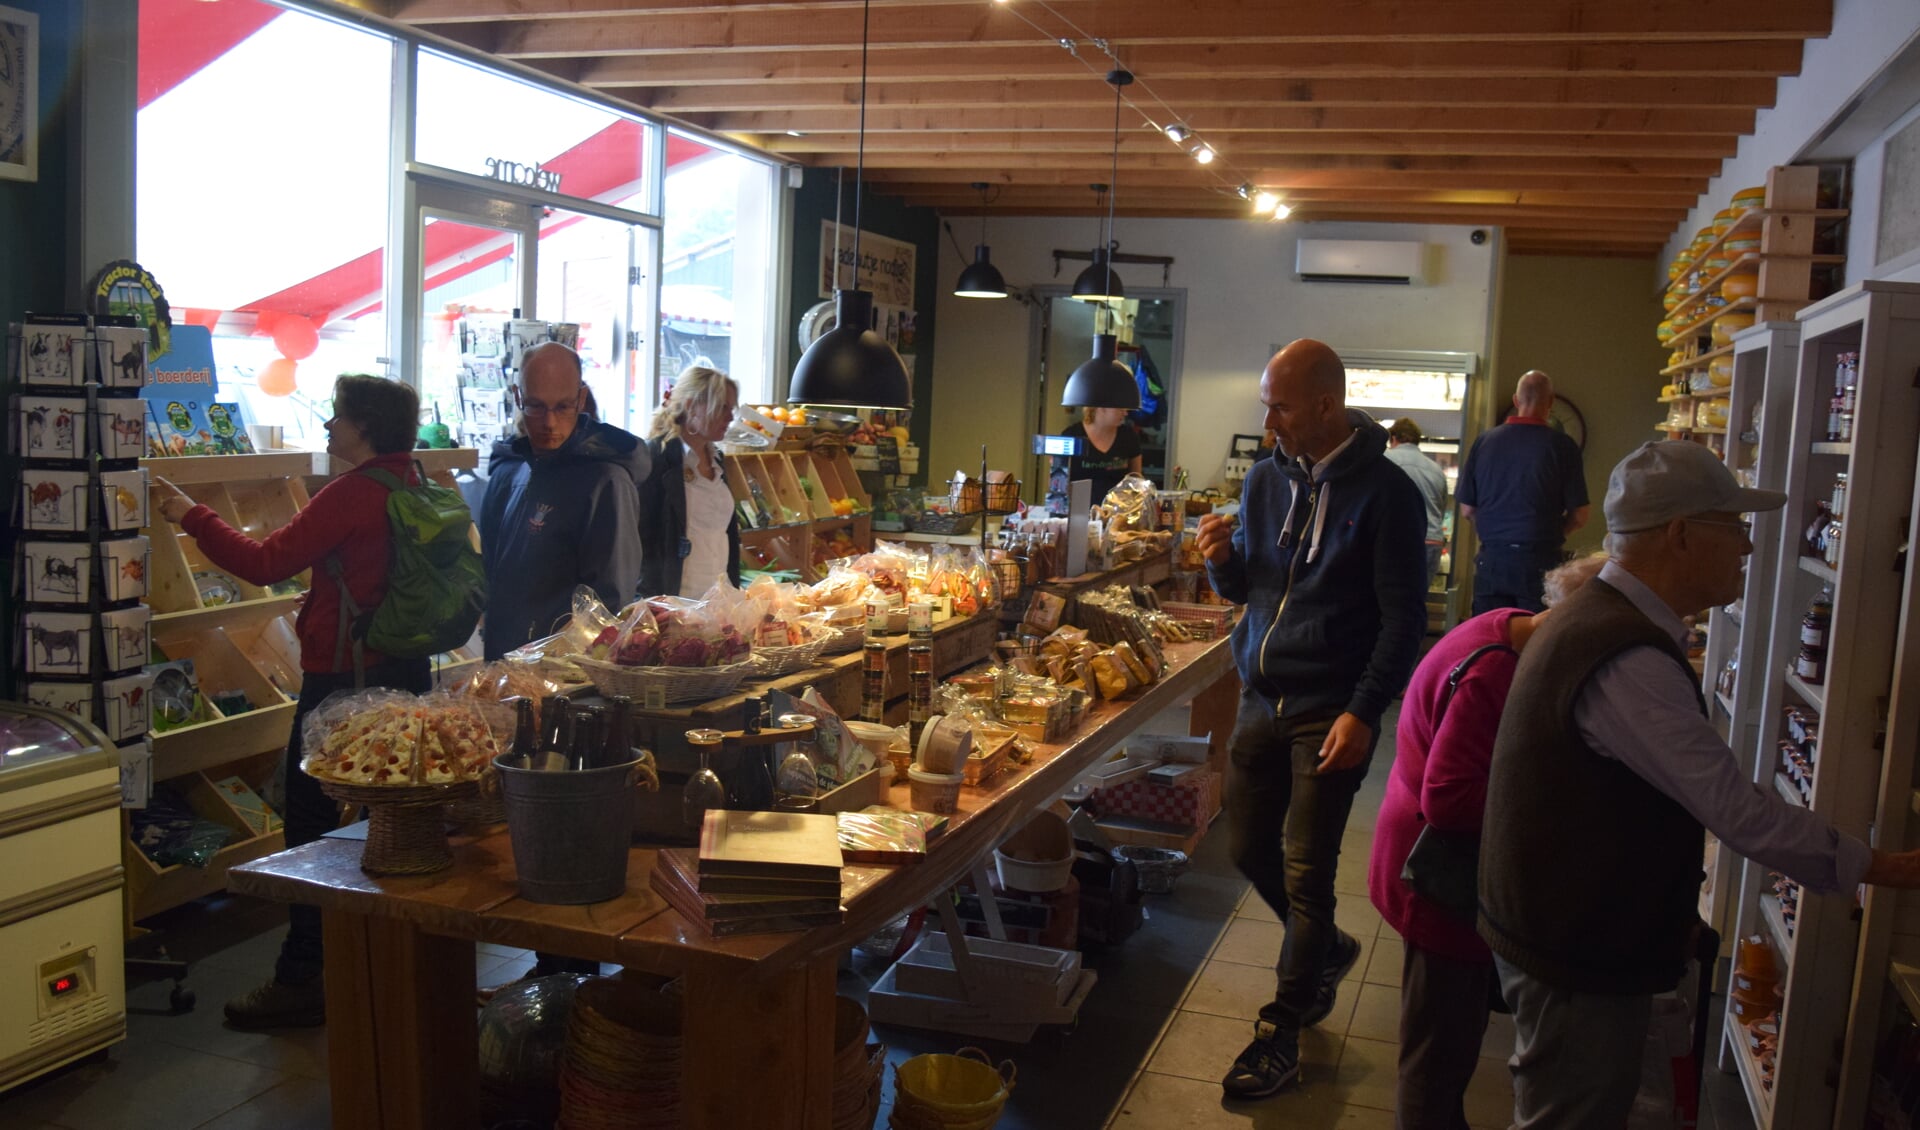  Bezoekers aan de open dag nemen een kijkje binnen in de Landwinkel.